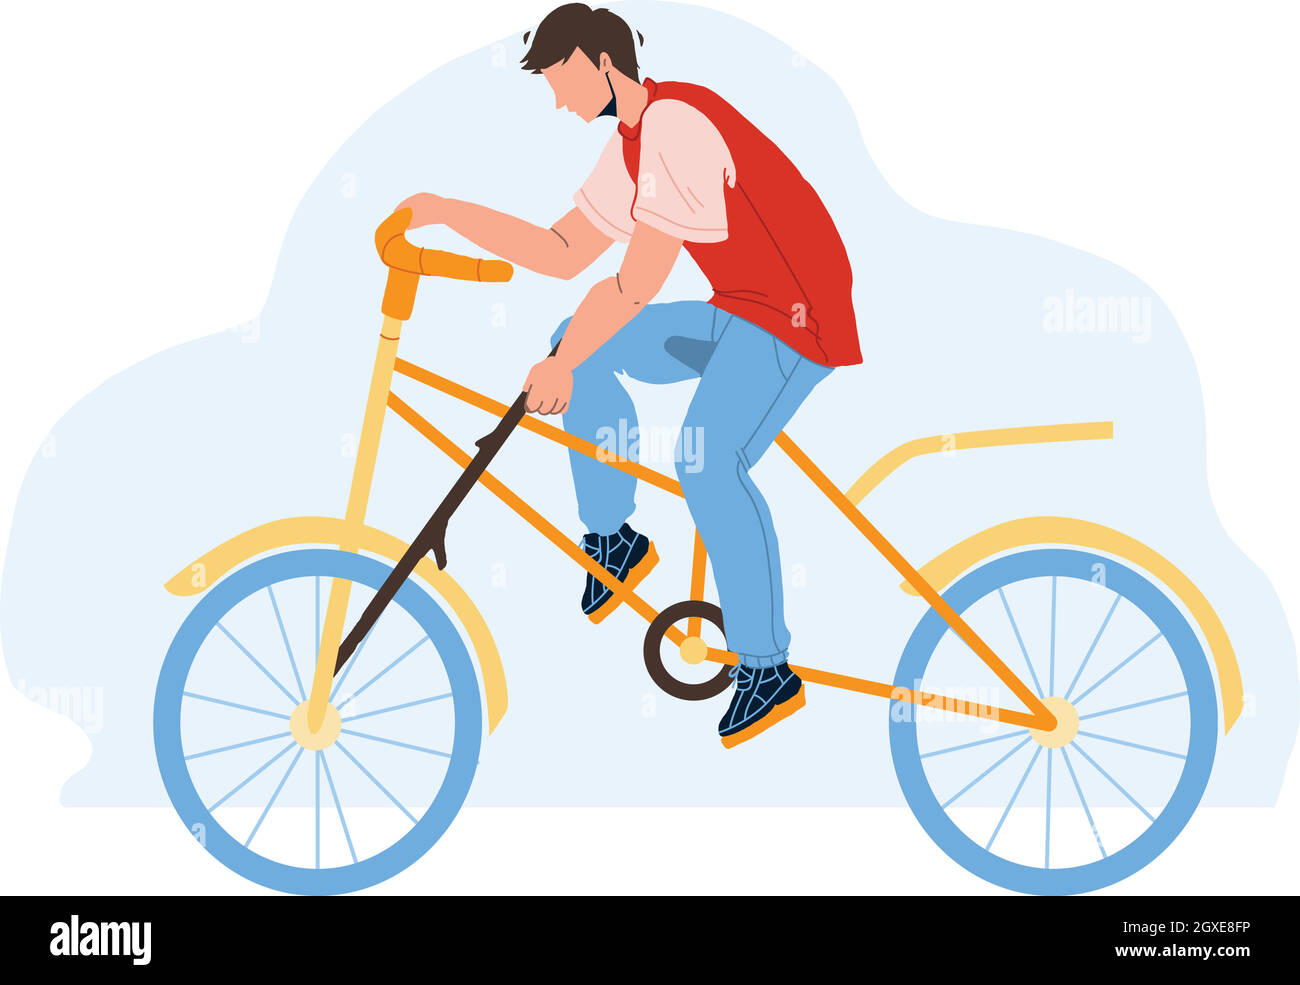 Dummheit Junge Setzen Speiche In Fahrrad Rad Vektor Stock Vektor